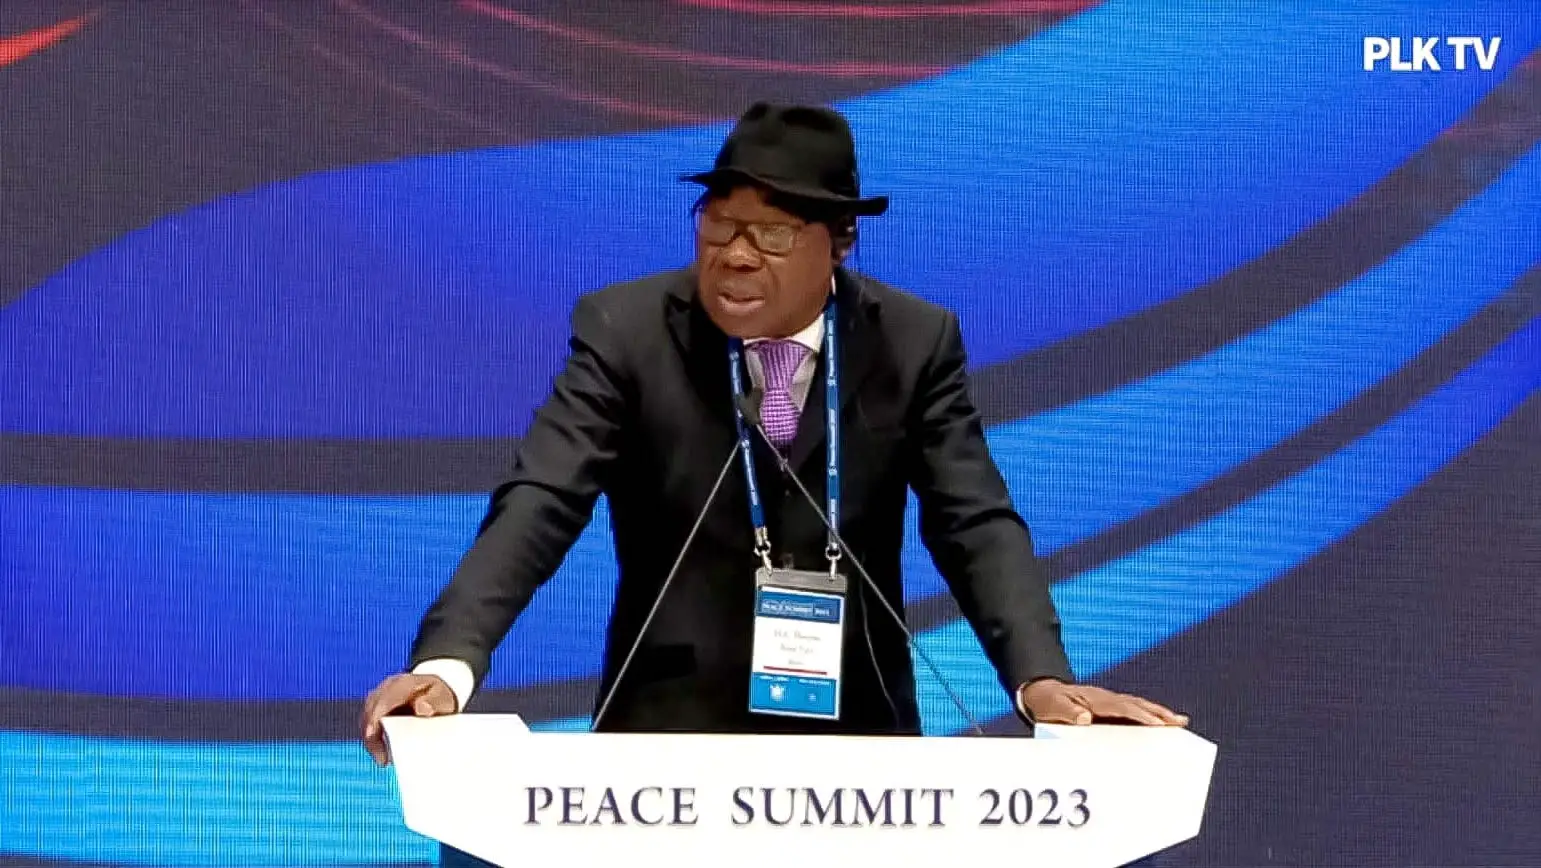 Afrique : Boni Yayi appelle à l'unité et à la gouvernance juste pour un avenir de paix et de prospérité